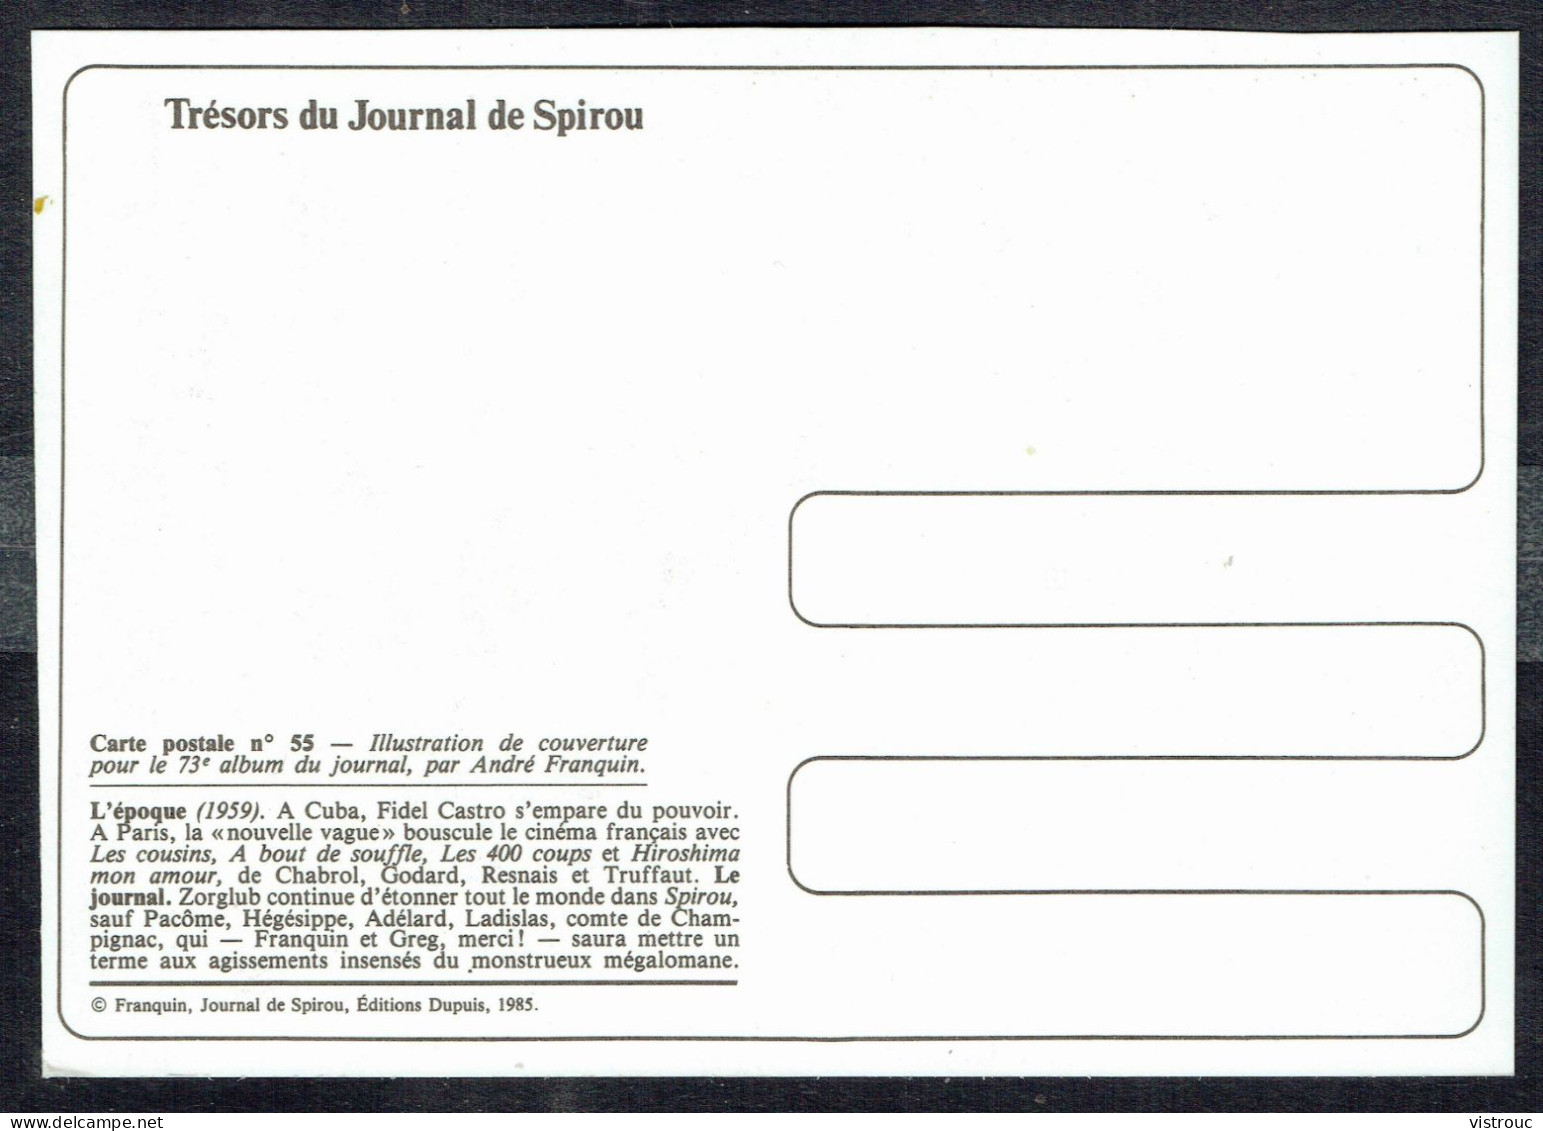 SPIROU - CP N° 55 : Illustration Couverture Album N° 73 De FRANQUIN - Non Circulé - Not Circulated - Ed. DUPUIS - 1985. - Bandes Dessinées